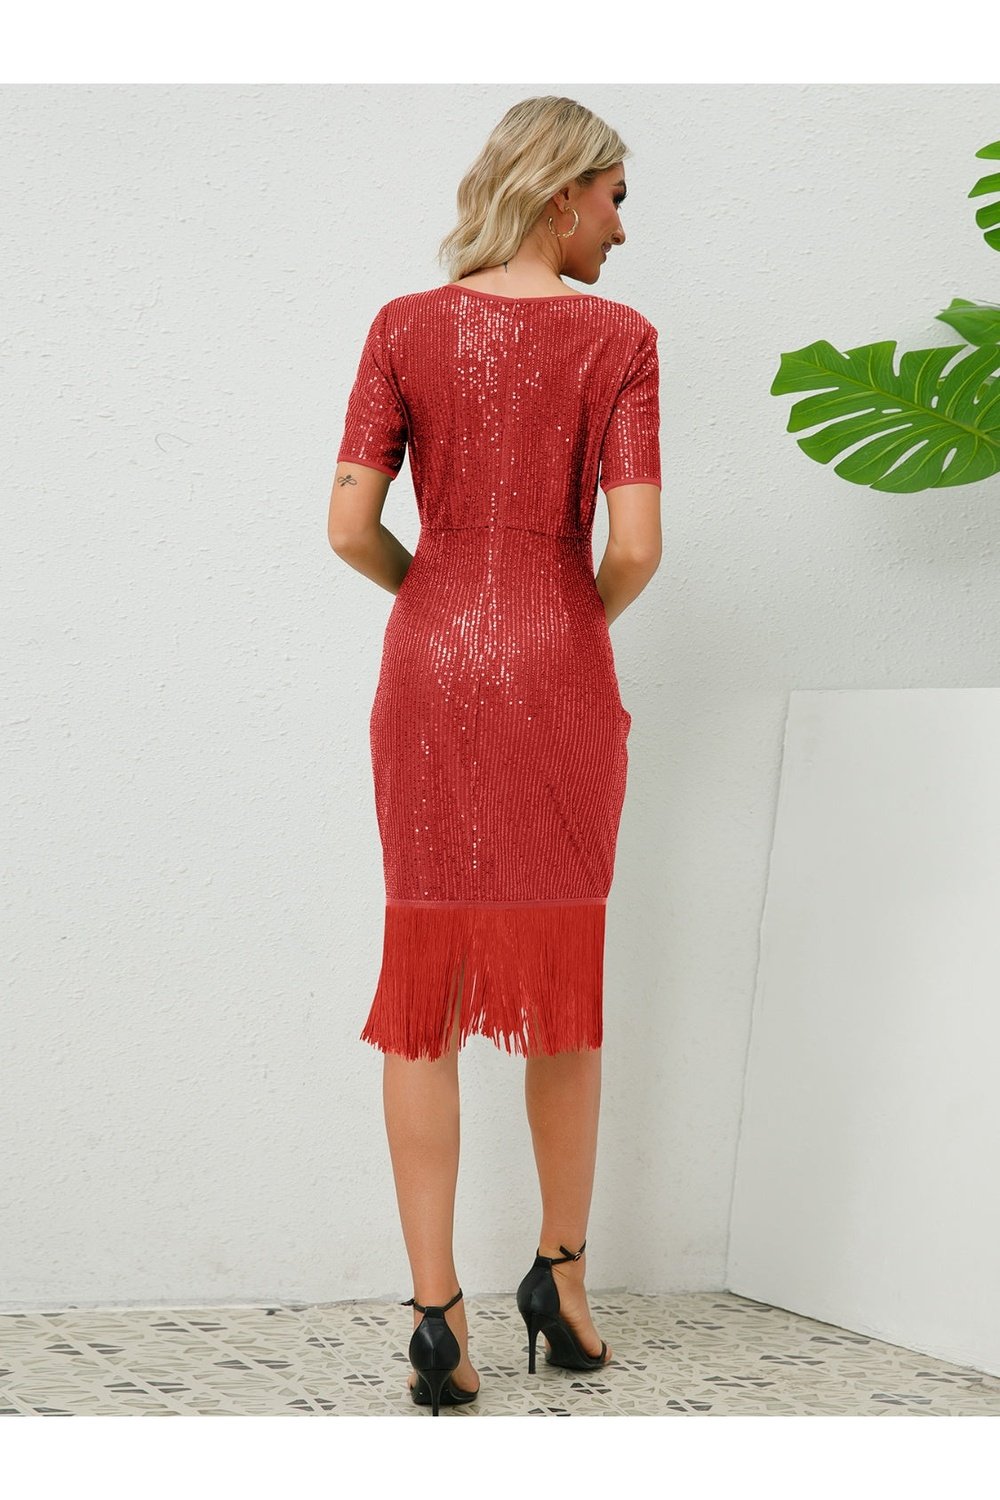 Tassel Sequin Short Sleeve Dress - Cocktail Dresses - FITGGINS